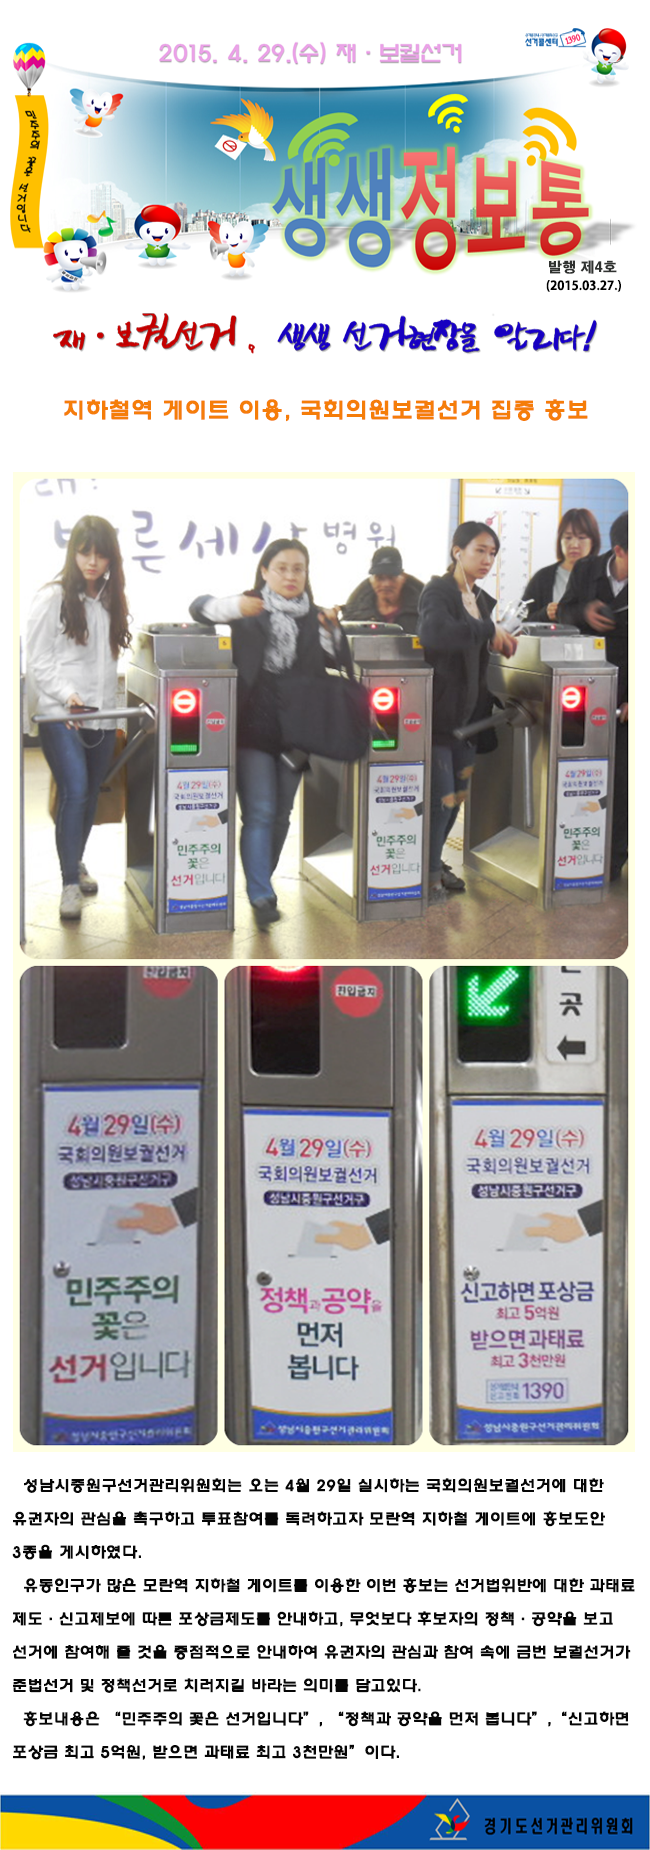 성남시중원구선거관리위원회는 오는 4월 29일 실시하는 국회의원보궐선거에 대한 유권자의 관심을 촉구하고 투표참여를 독려하고자 모란역 지하철 게이트에 홍보도안 3종을 게시하였다.